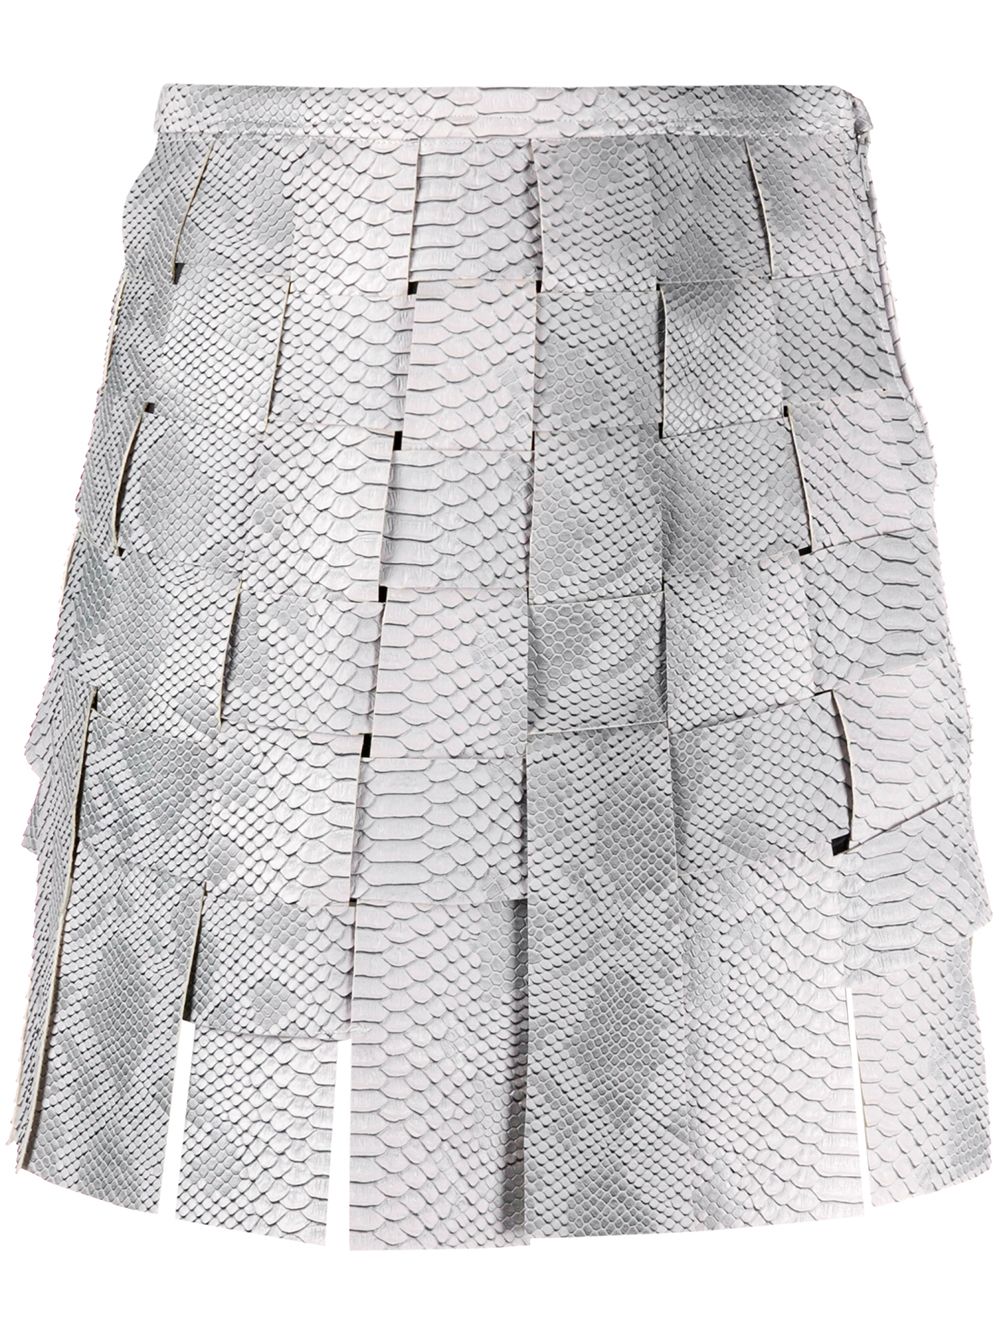 фото Maisie wilen плетеная юбка мини с тиснением под змеиную кожу